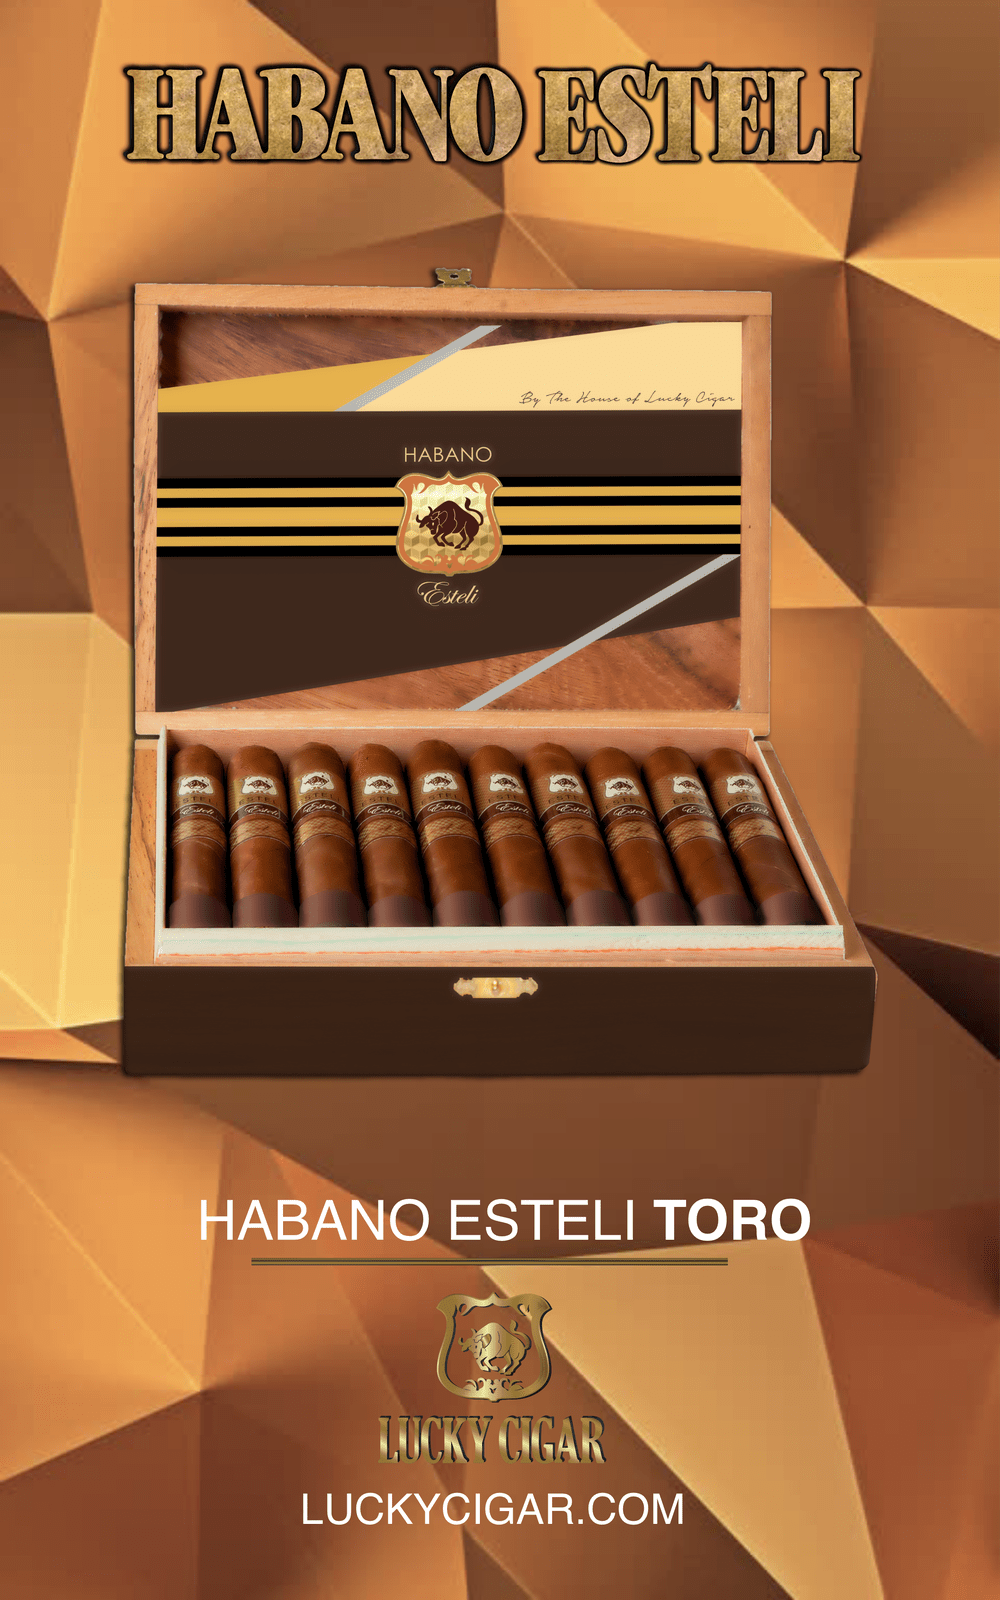 Habano Esteli TORO 6x50 Box of 20 pieces